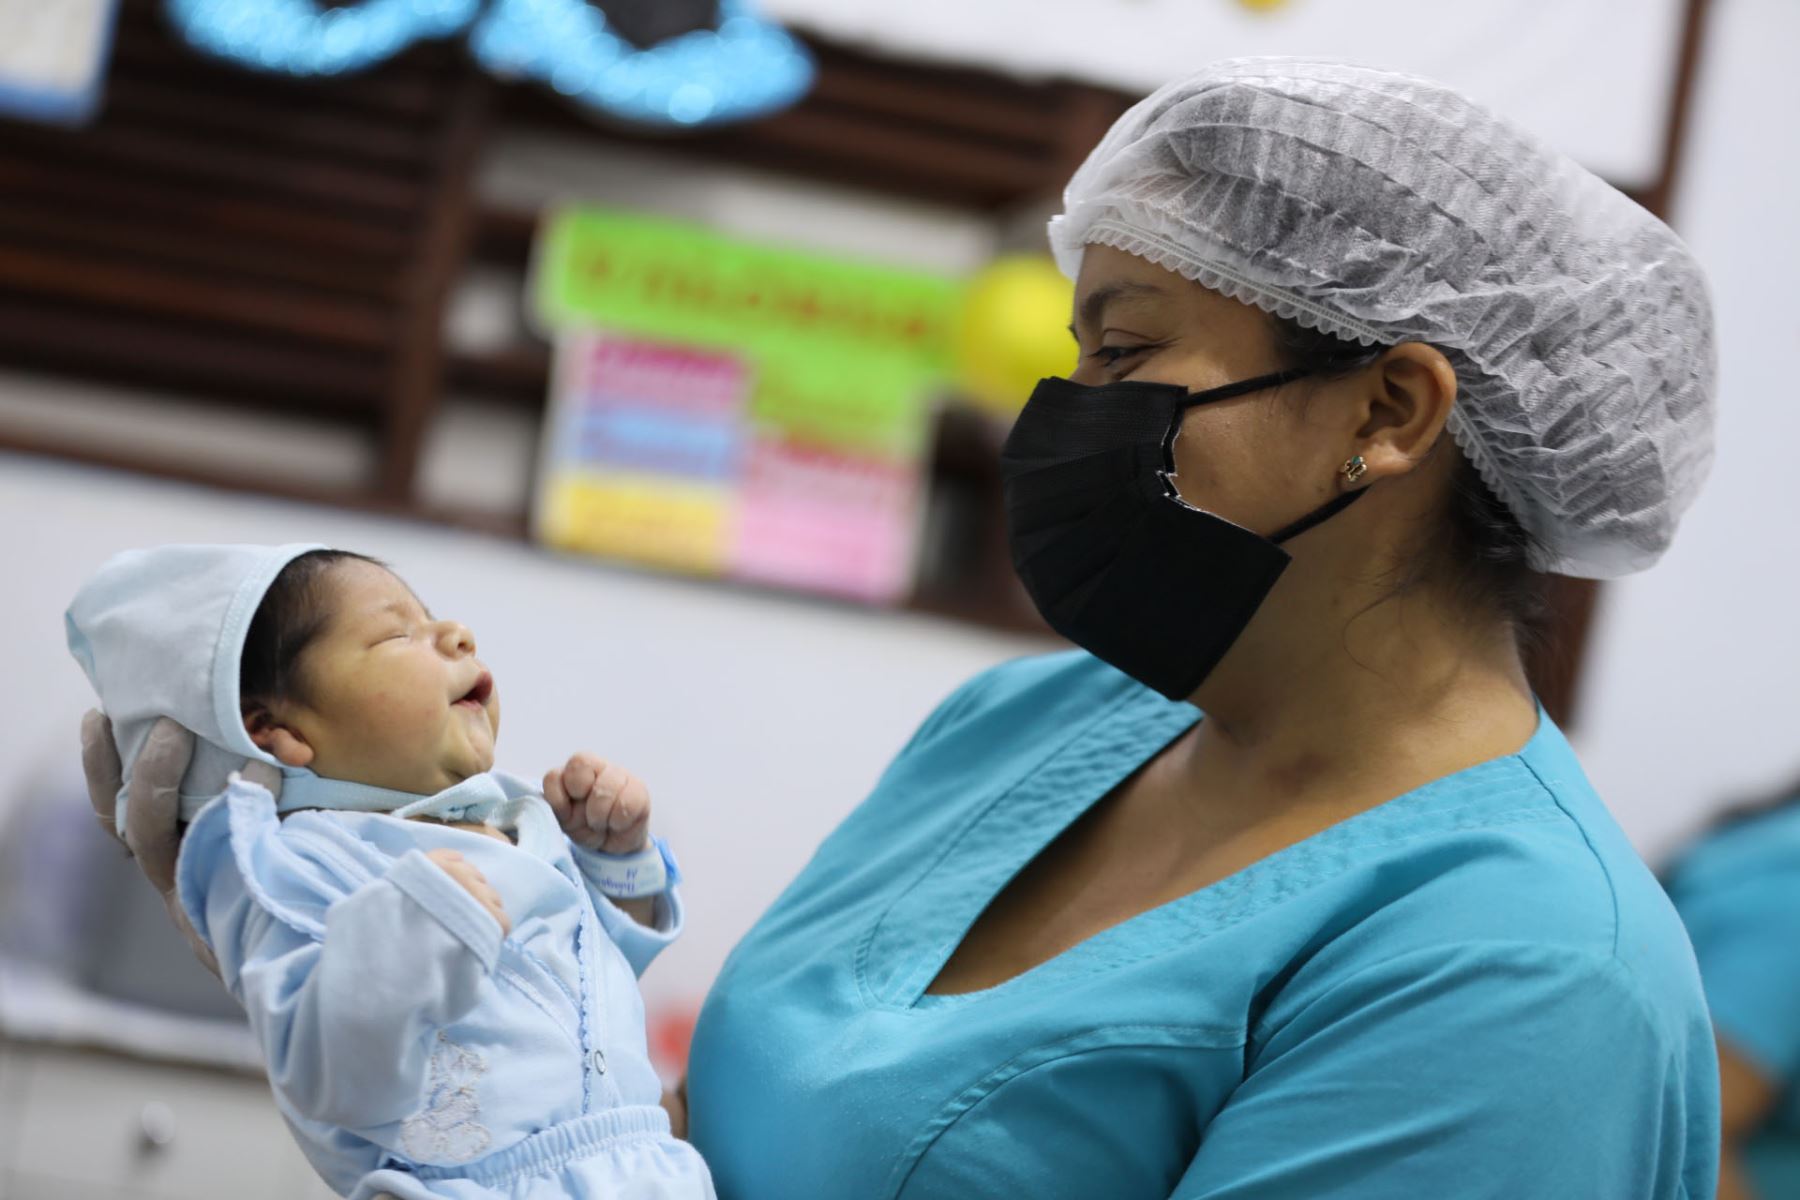 En el 2012 se registraron 738,945 nacimientos en el Perú y en el extranjero, mientras que, de enero a mayo de 2021, la cifra fue de 318,007.